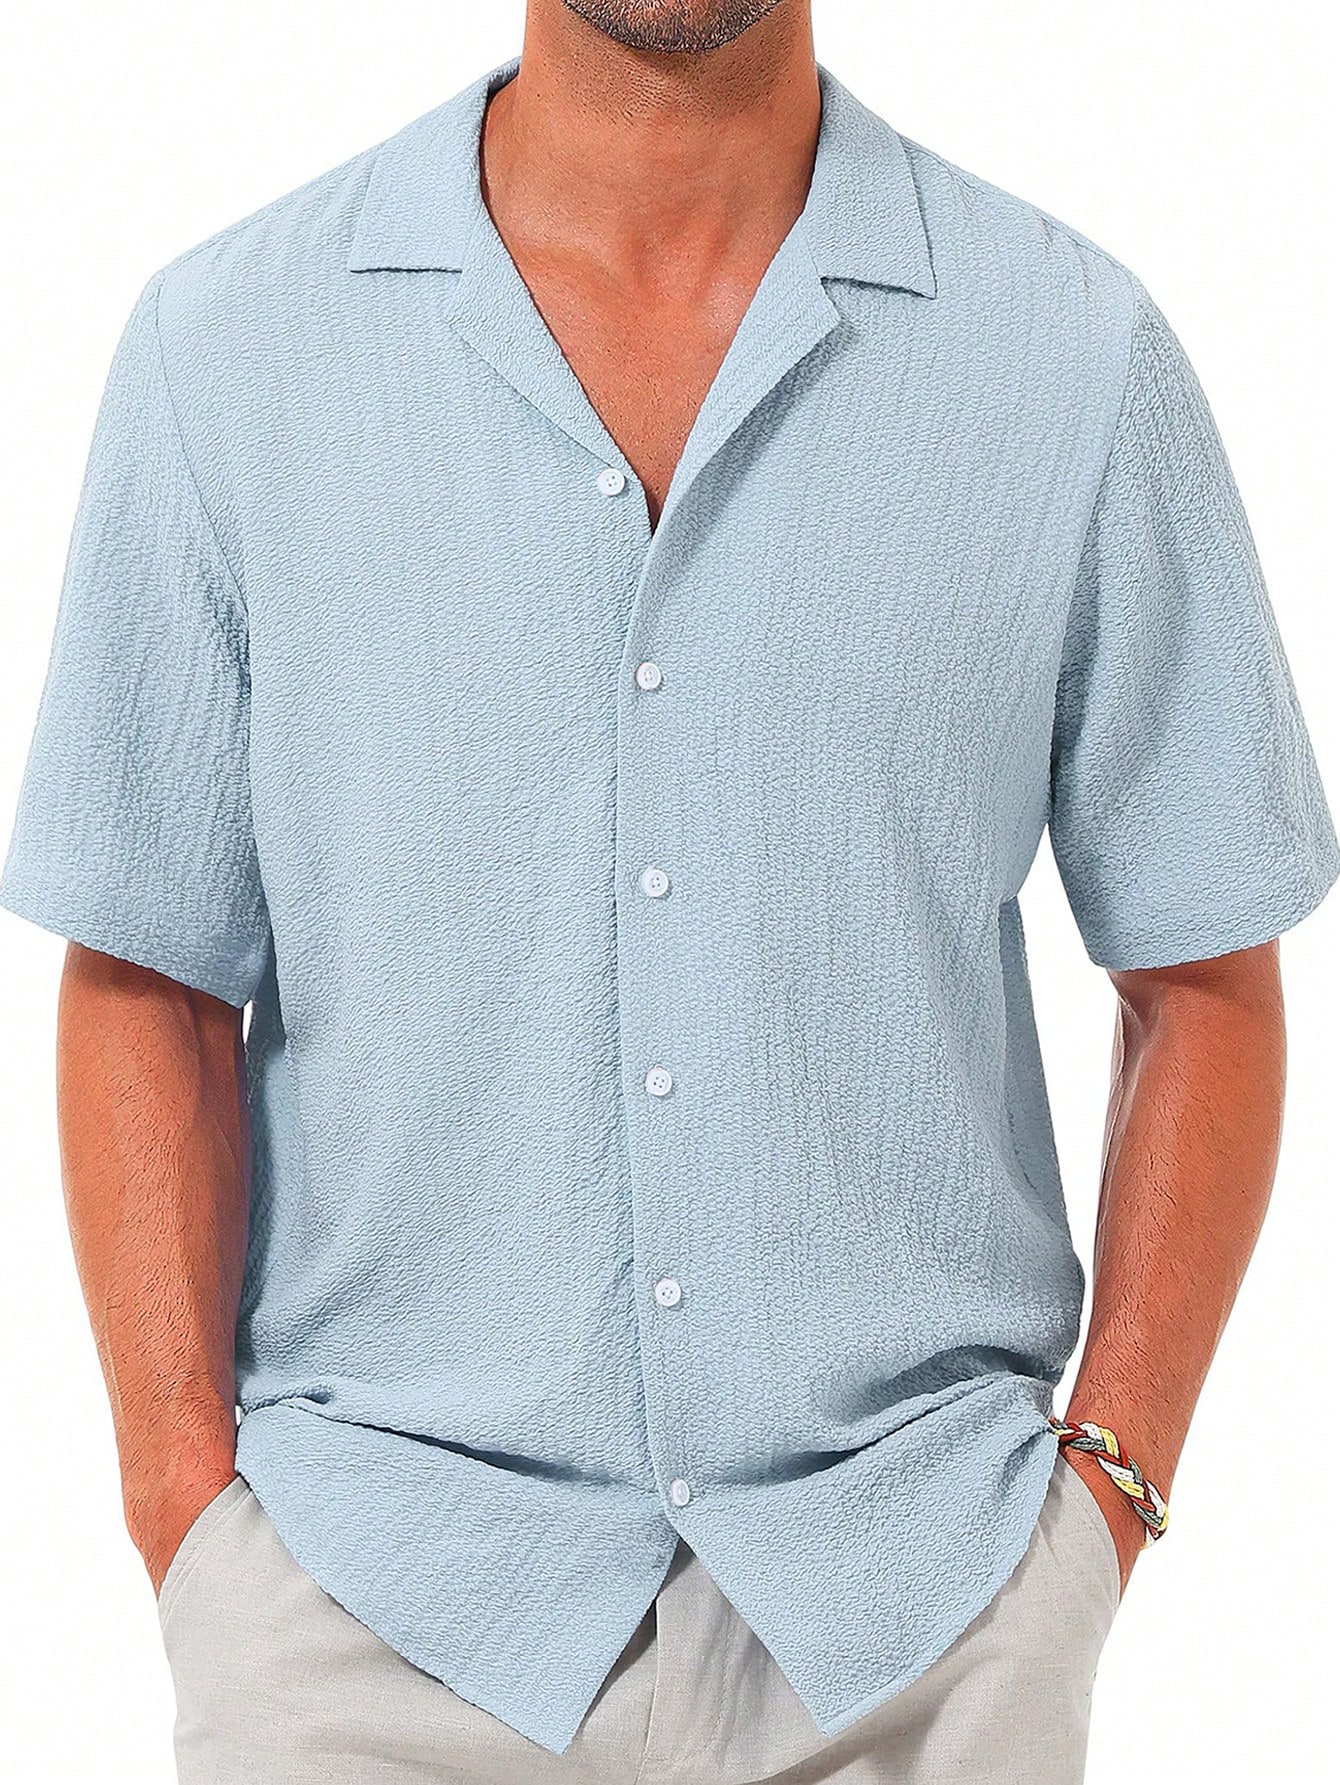 Мужская повседневная рубашка с коротким рукавом на пуговицах, синий